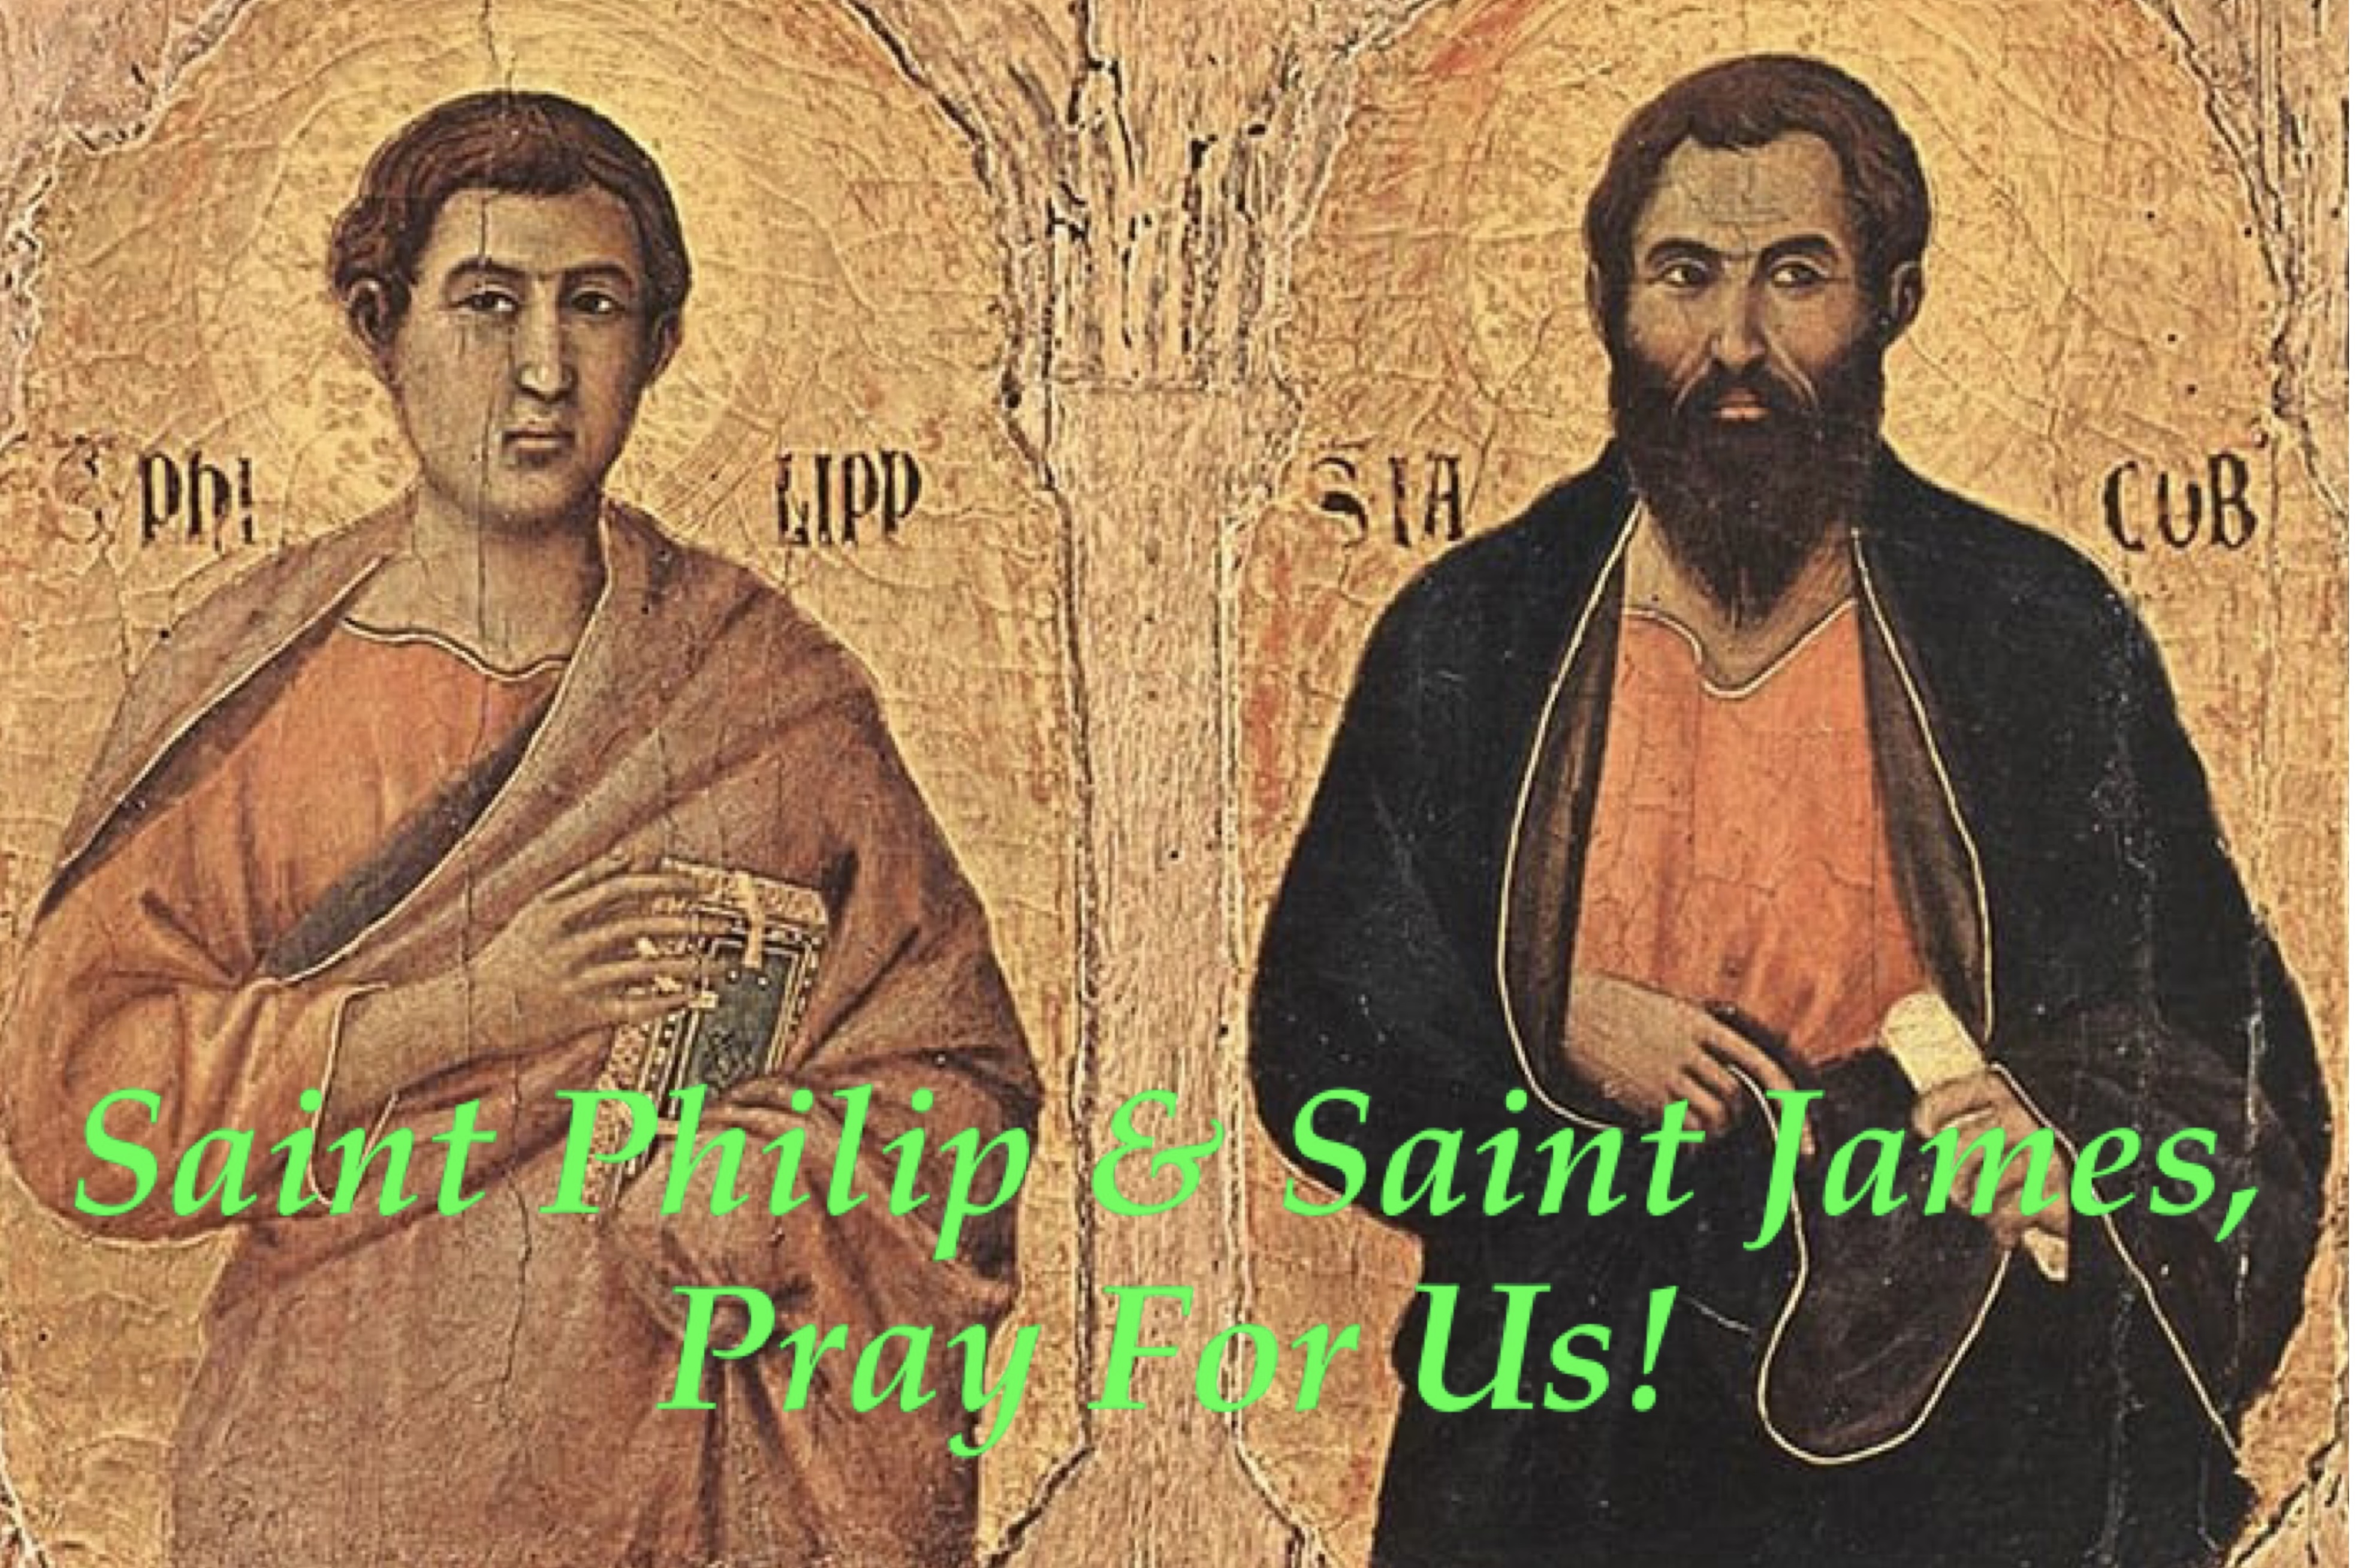 3rd April - Saint Philip and Saint James